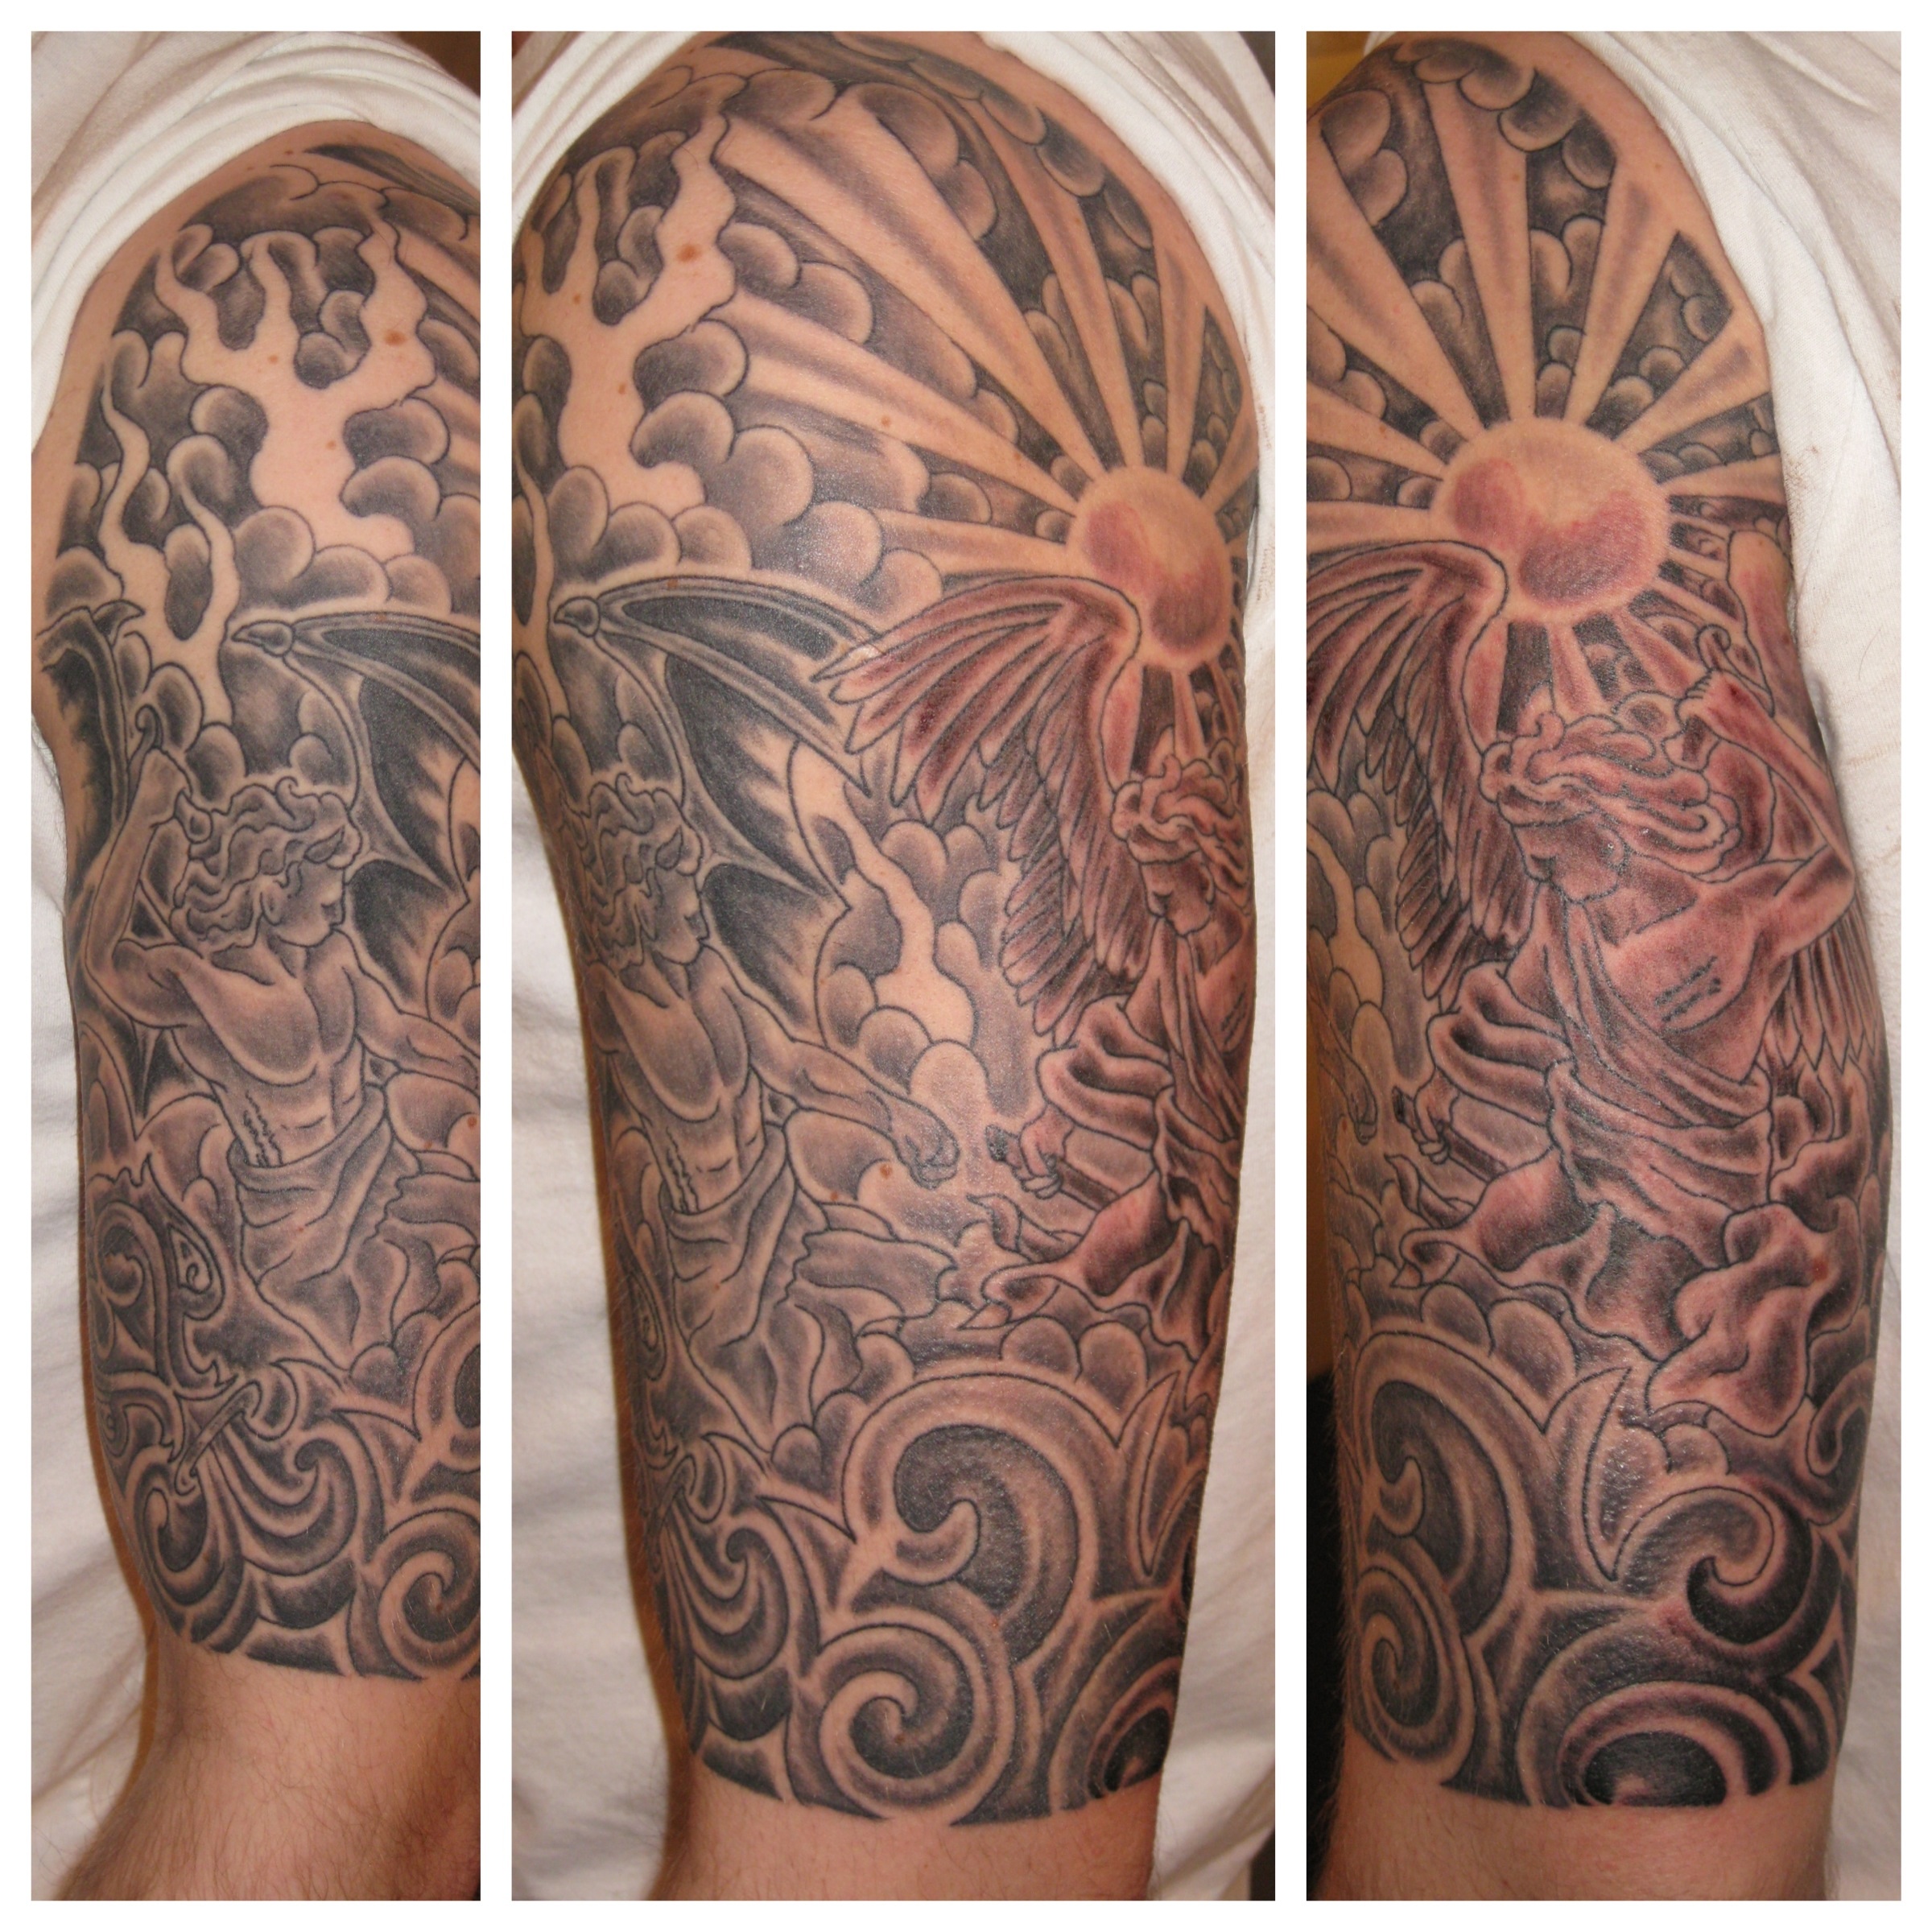 Flash designs @anais.art.ink! DM her... - Main Street Tattoo | Facebook